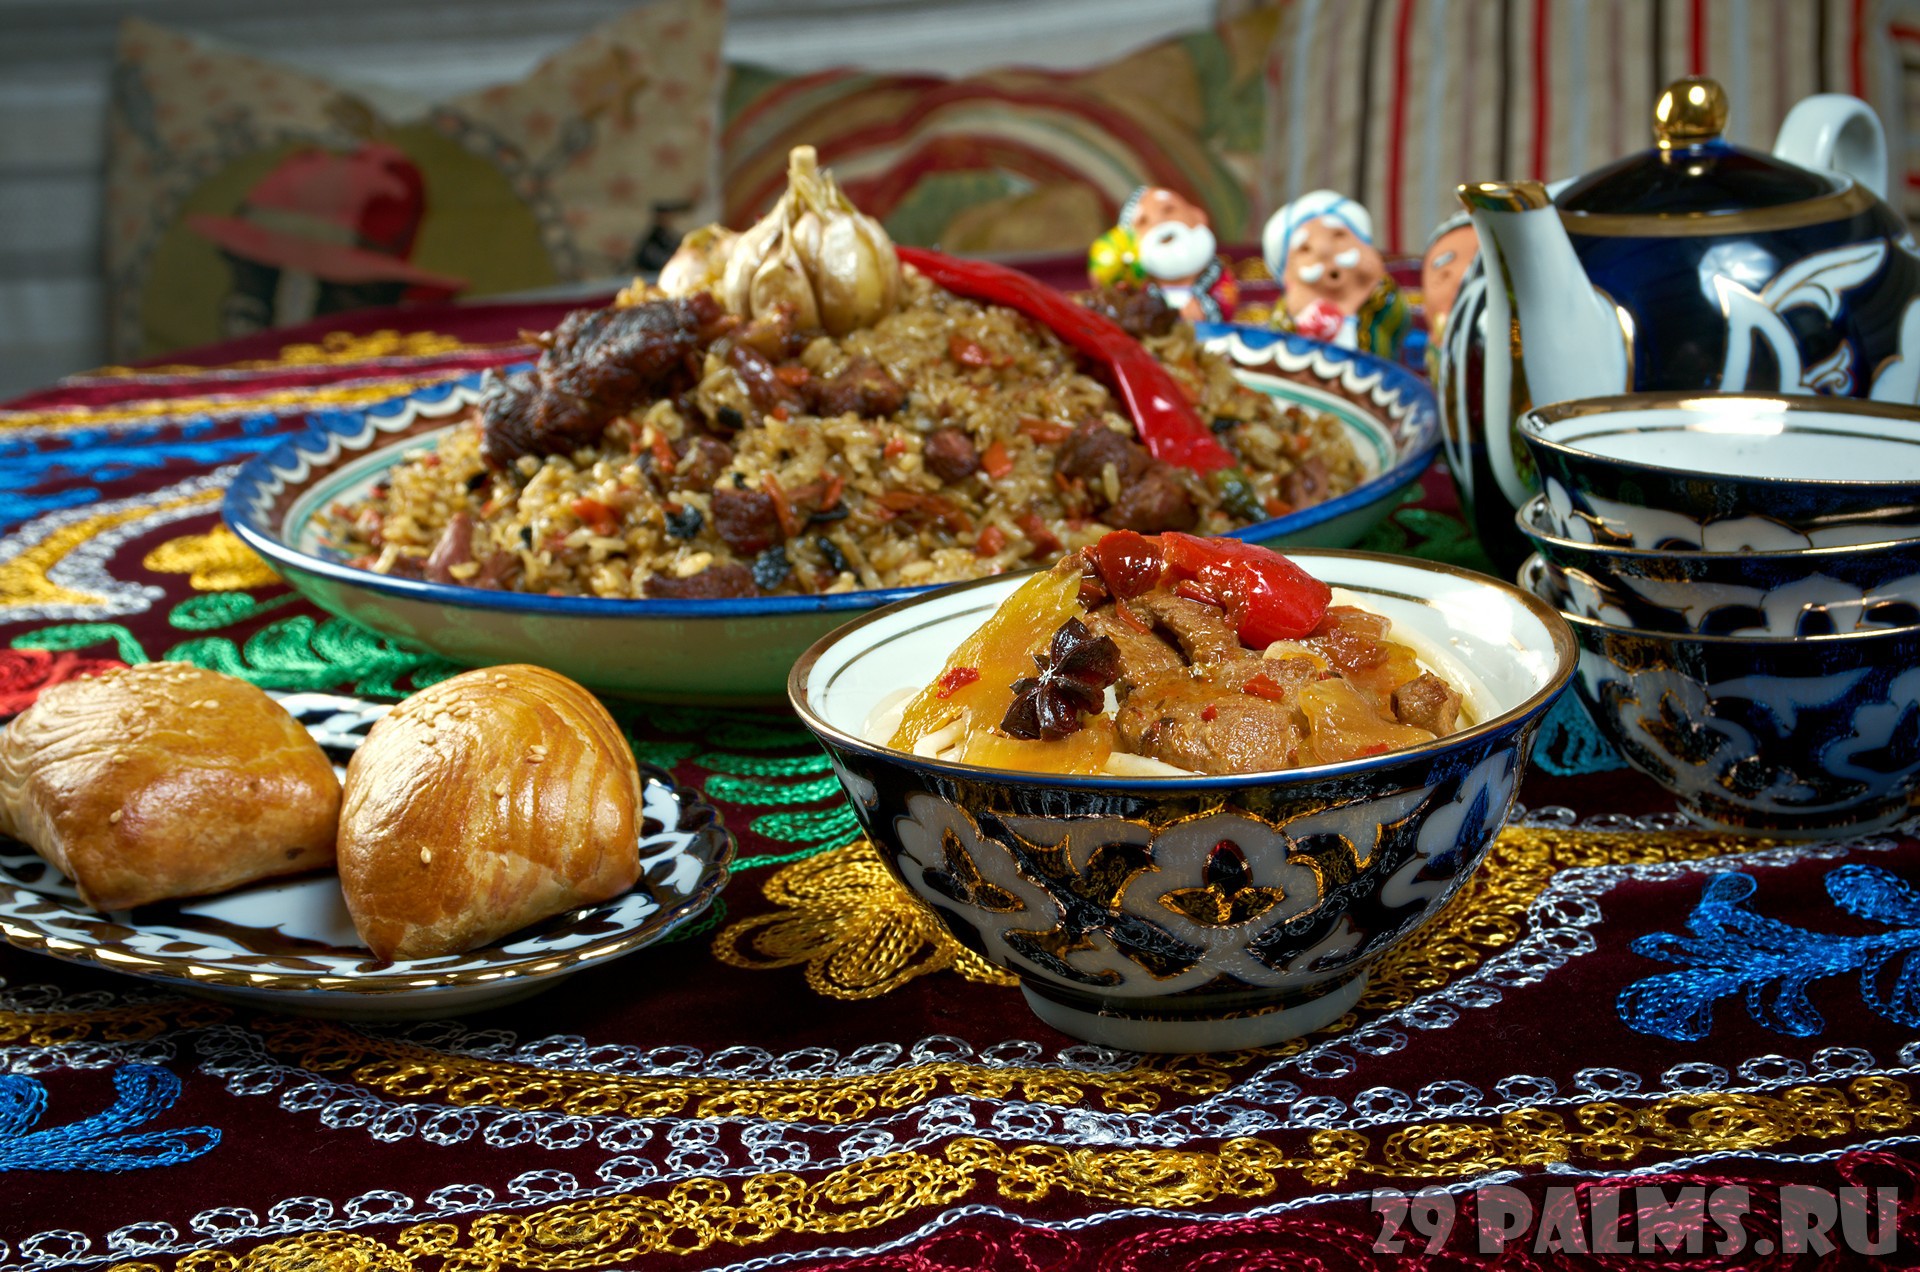 Традиции таджикской кухни. Чайхона Самарканд узбекская кухня. Узбекский дастархан. Узбекская кухня дастархан. Восточный дастархан.